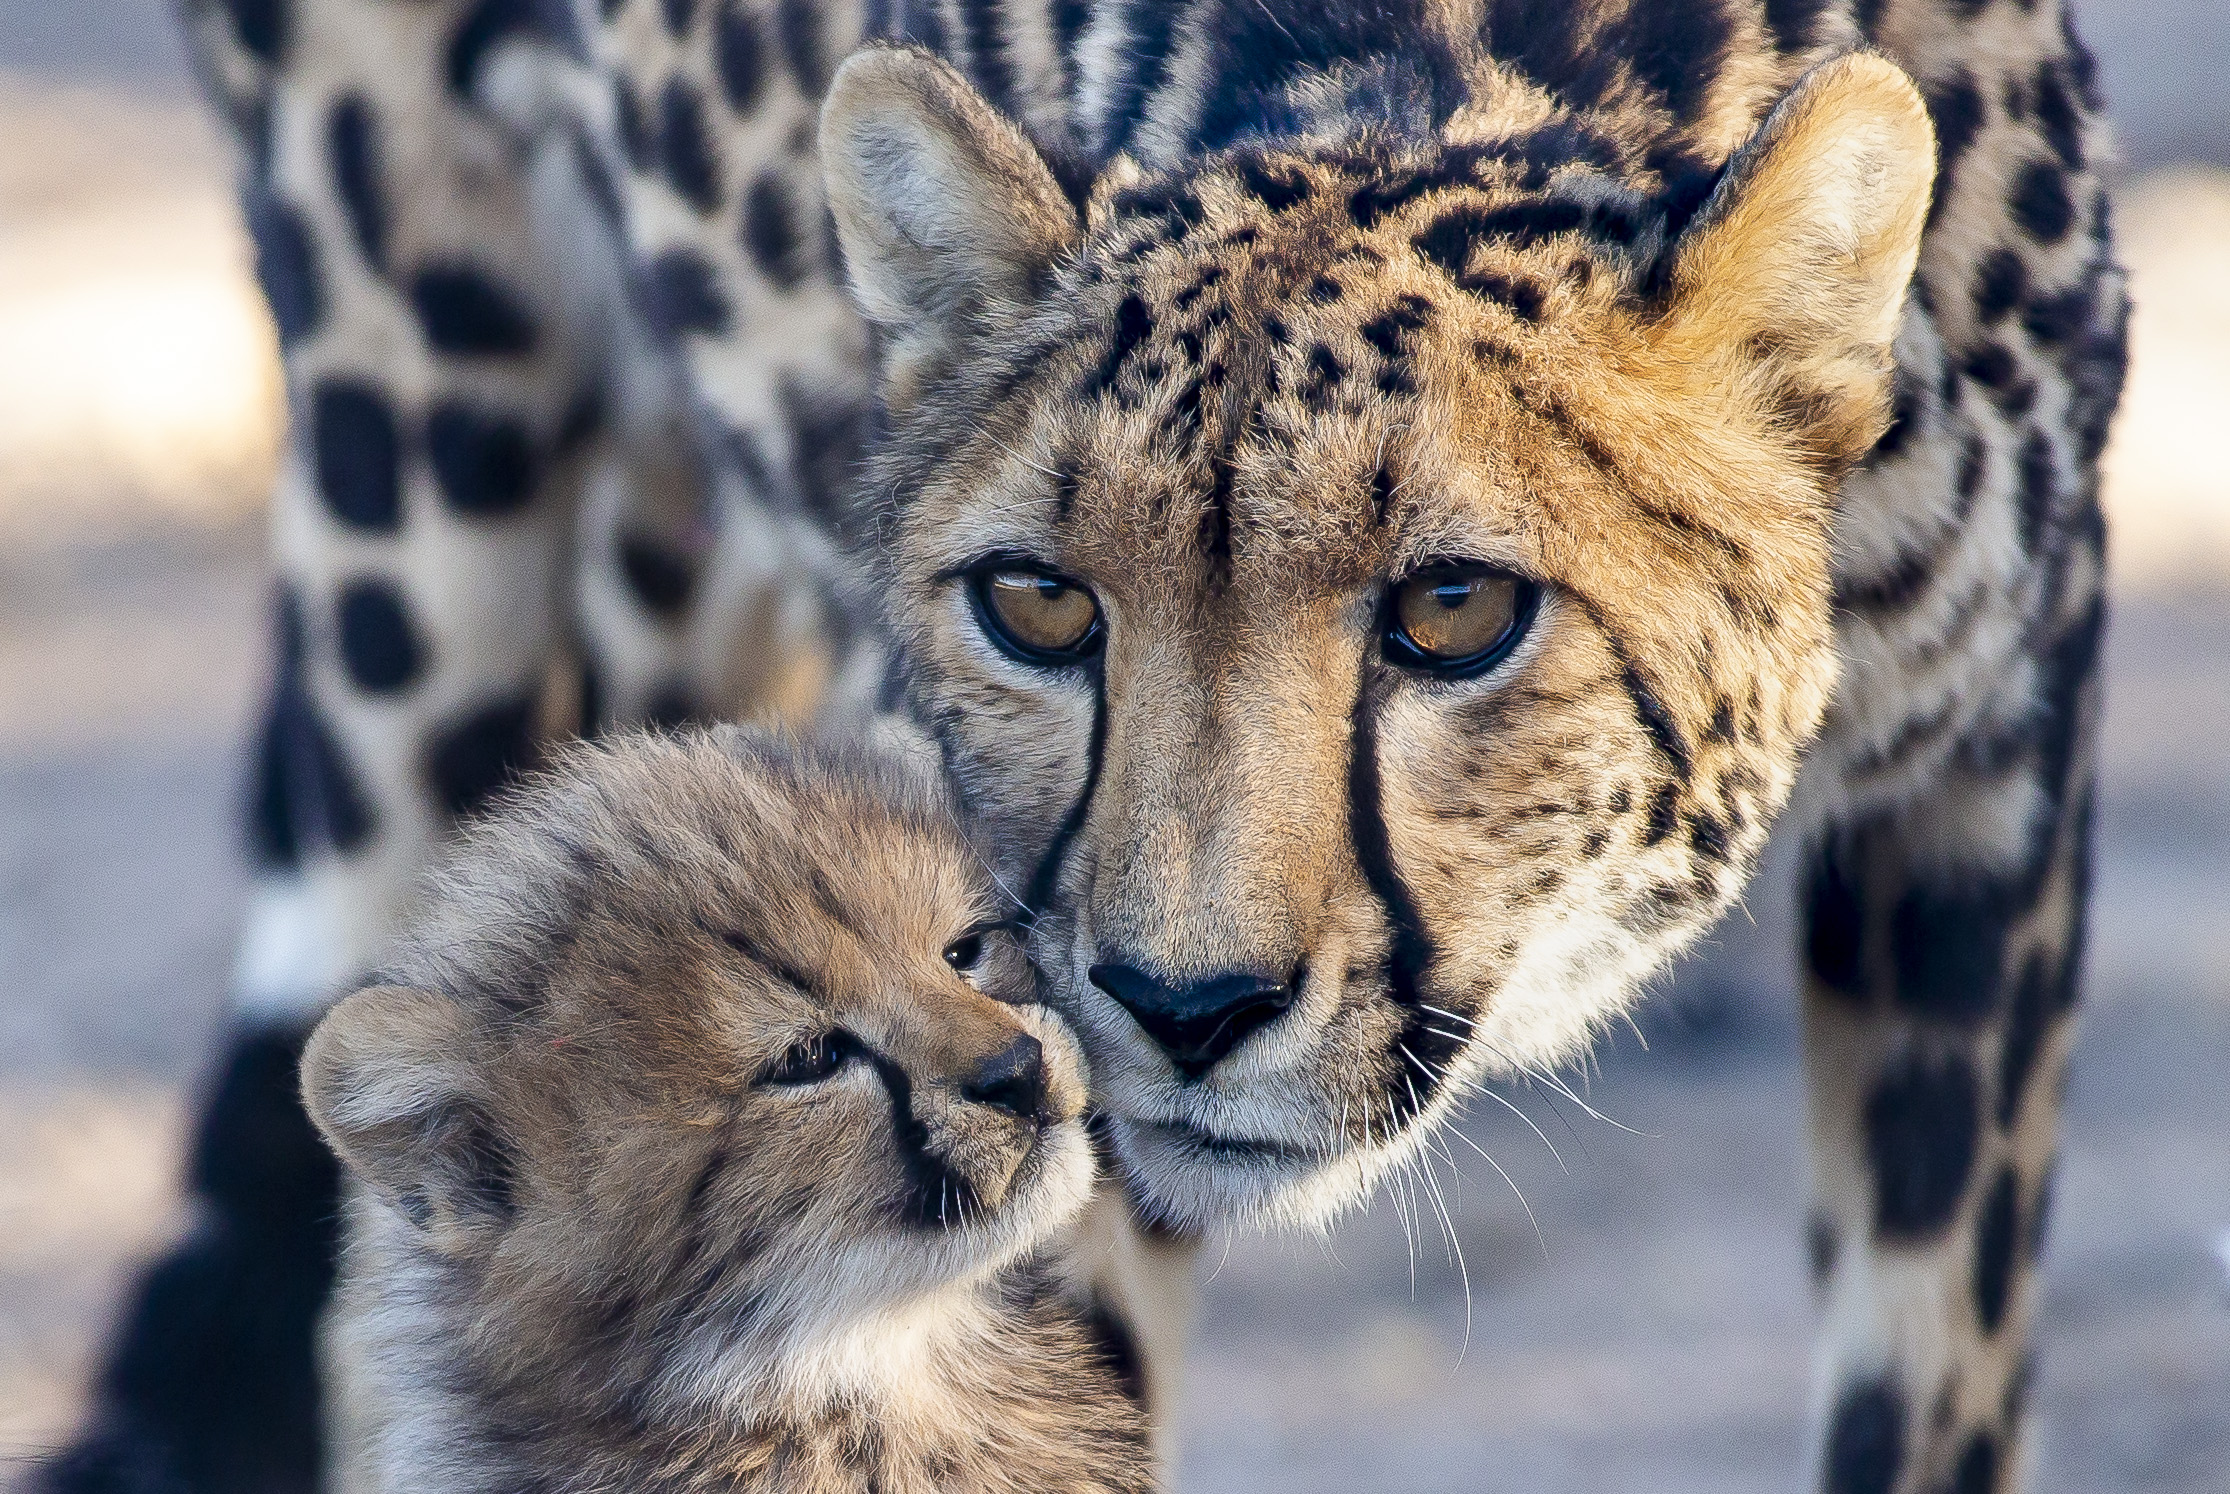 A cub and their mum